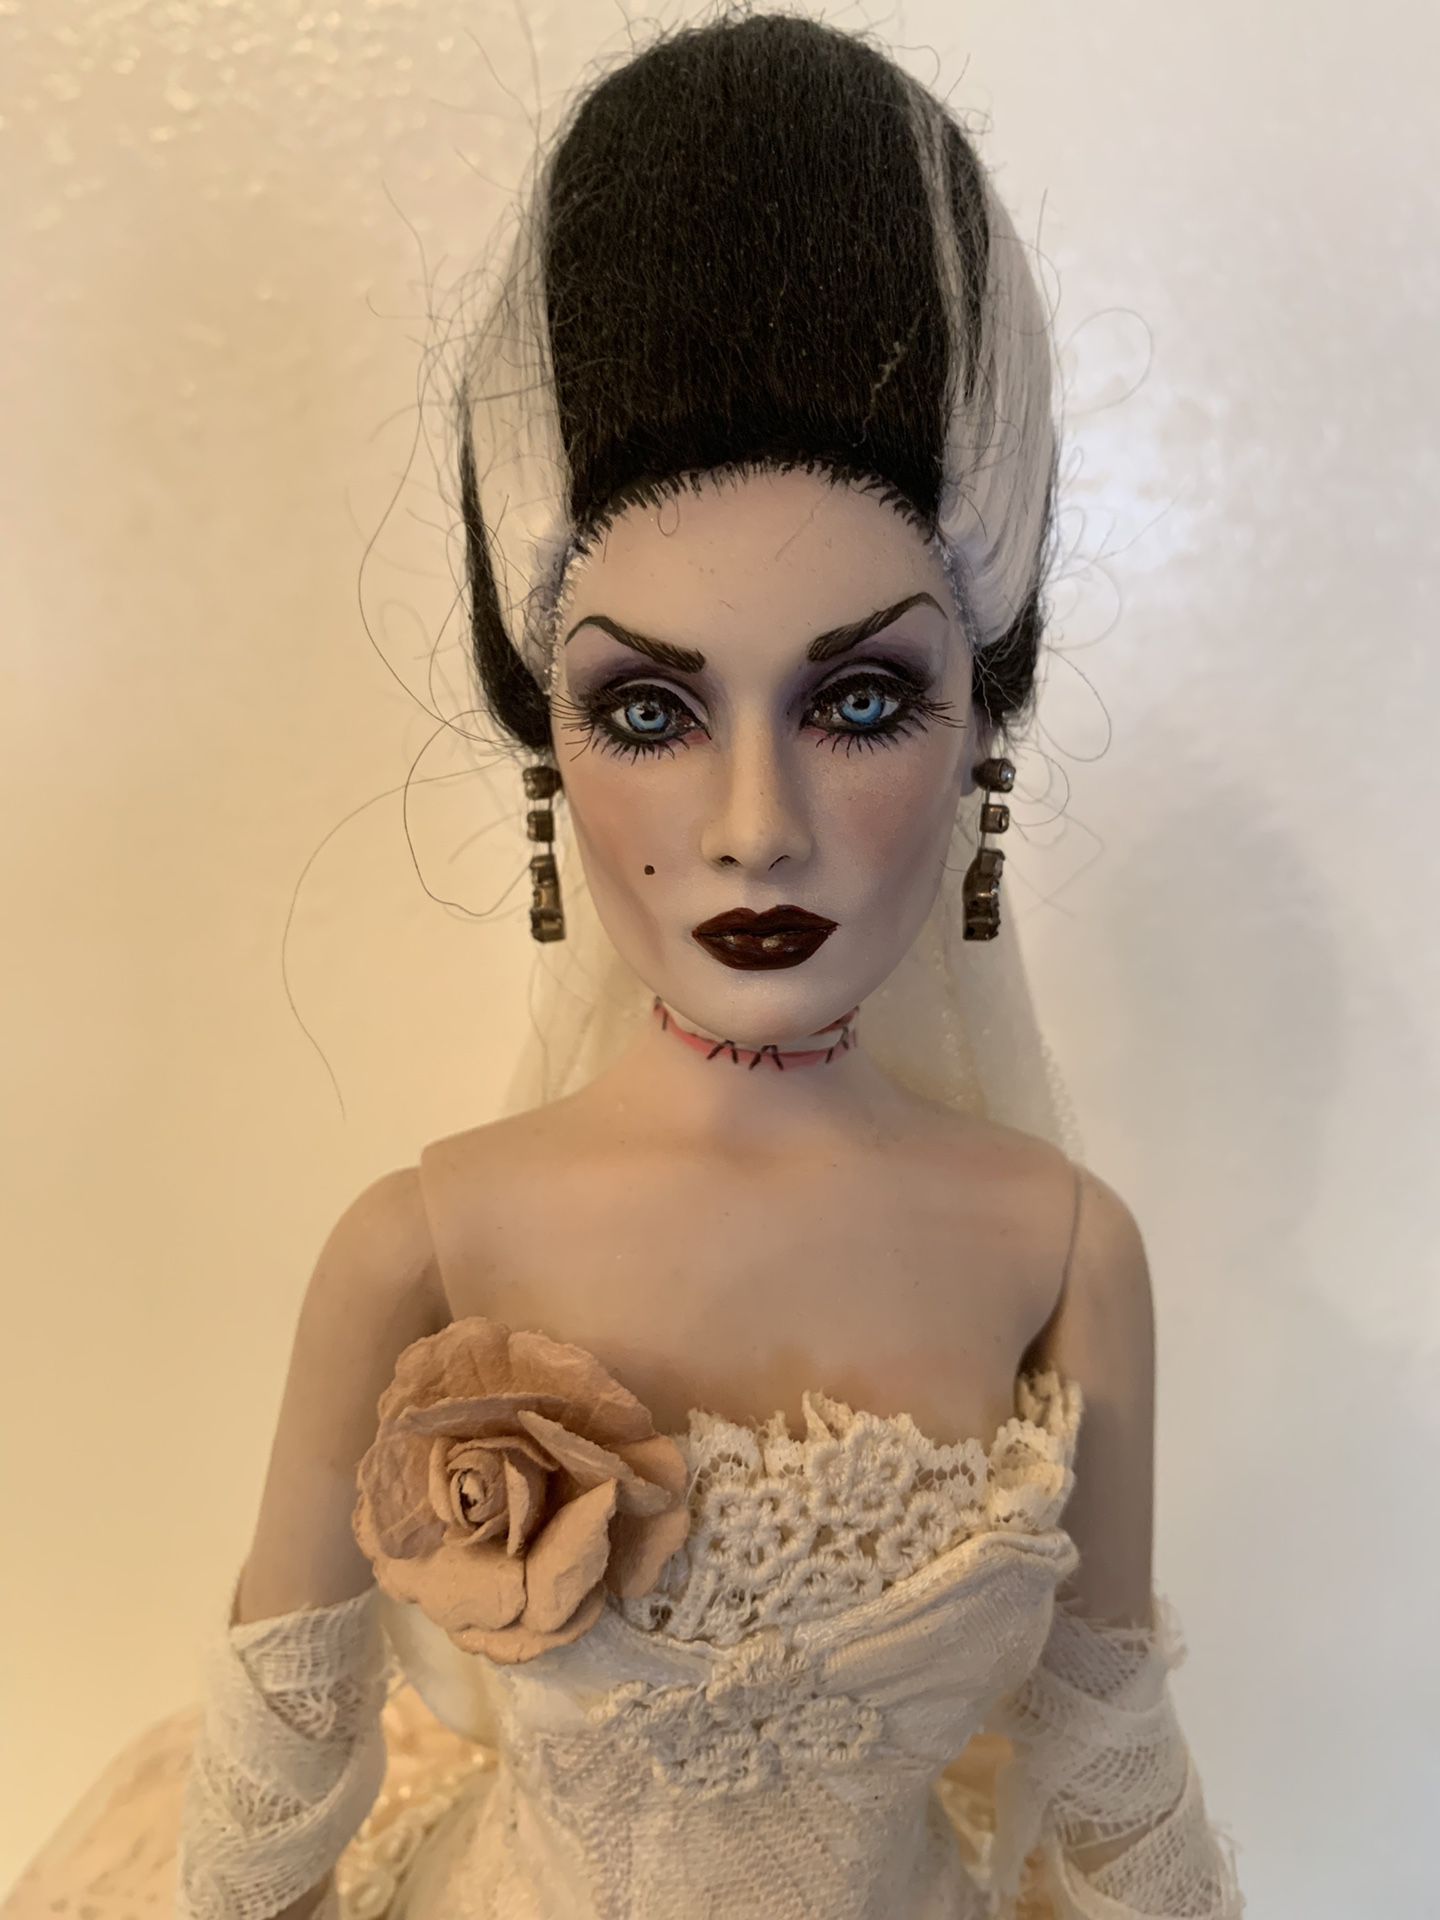 The bride of Frankenstein Tonner custom made doll